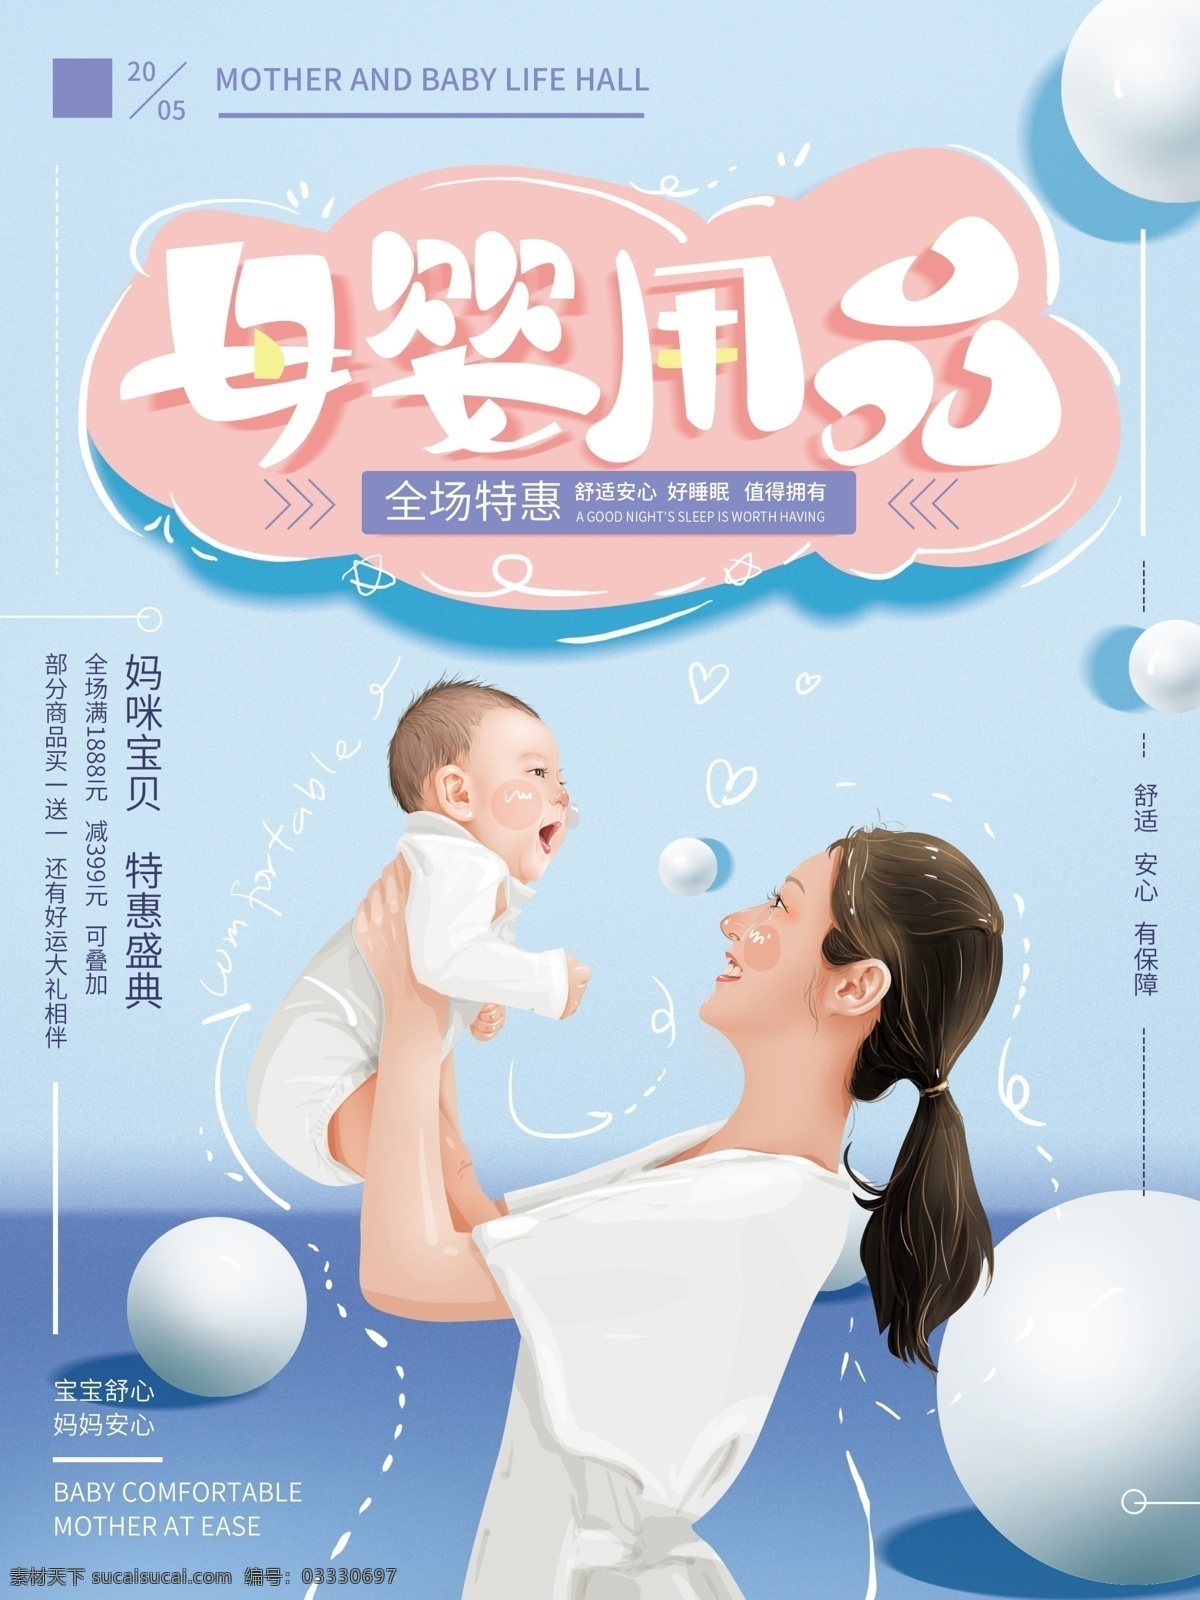 原创 手绘 清新 母婴 用品 海报 baby 妈妈 促销 简约 温馨 蓝色